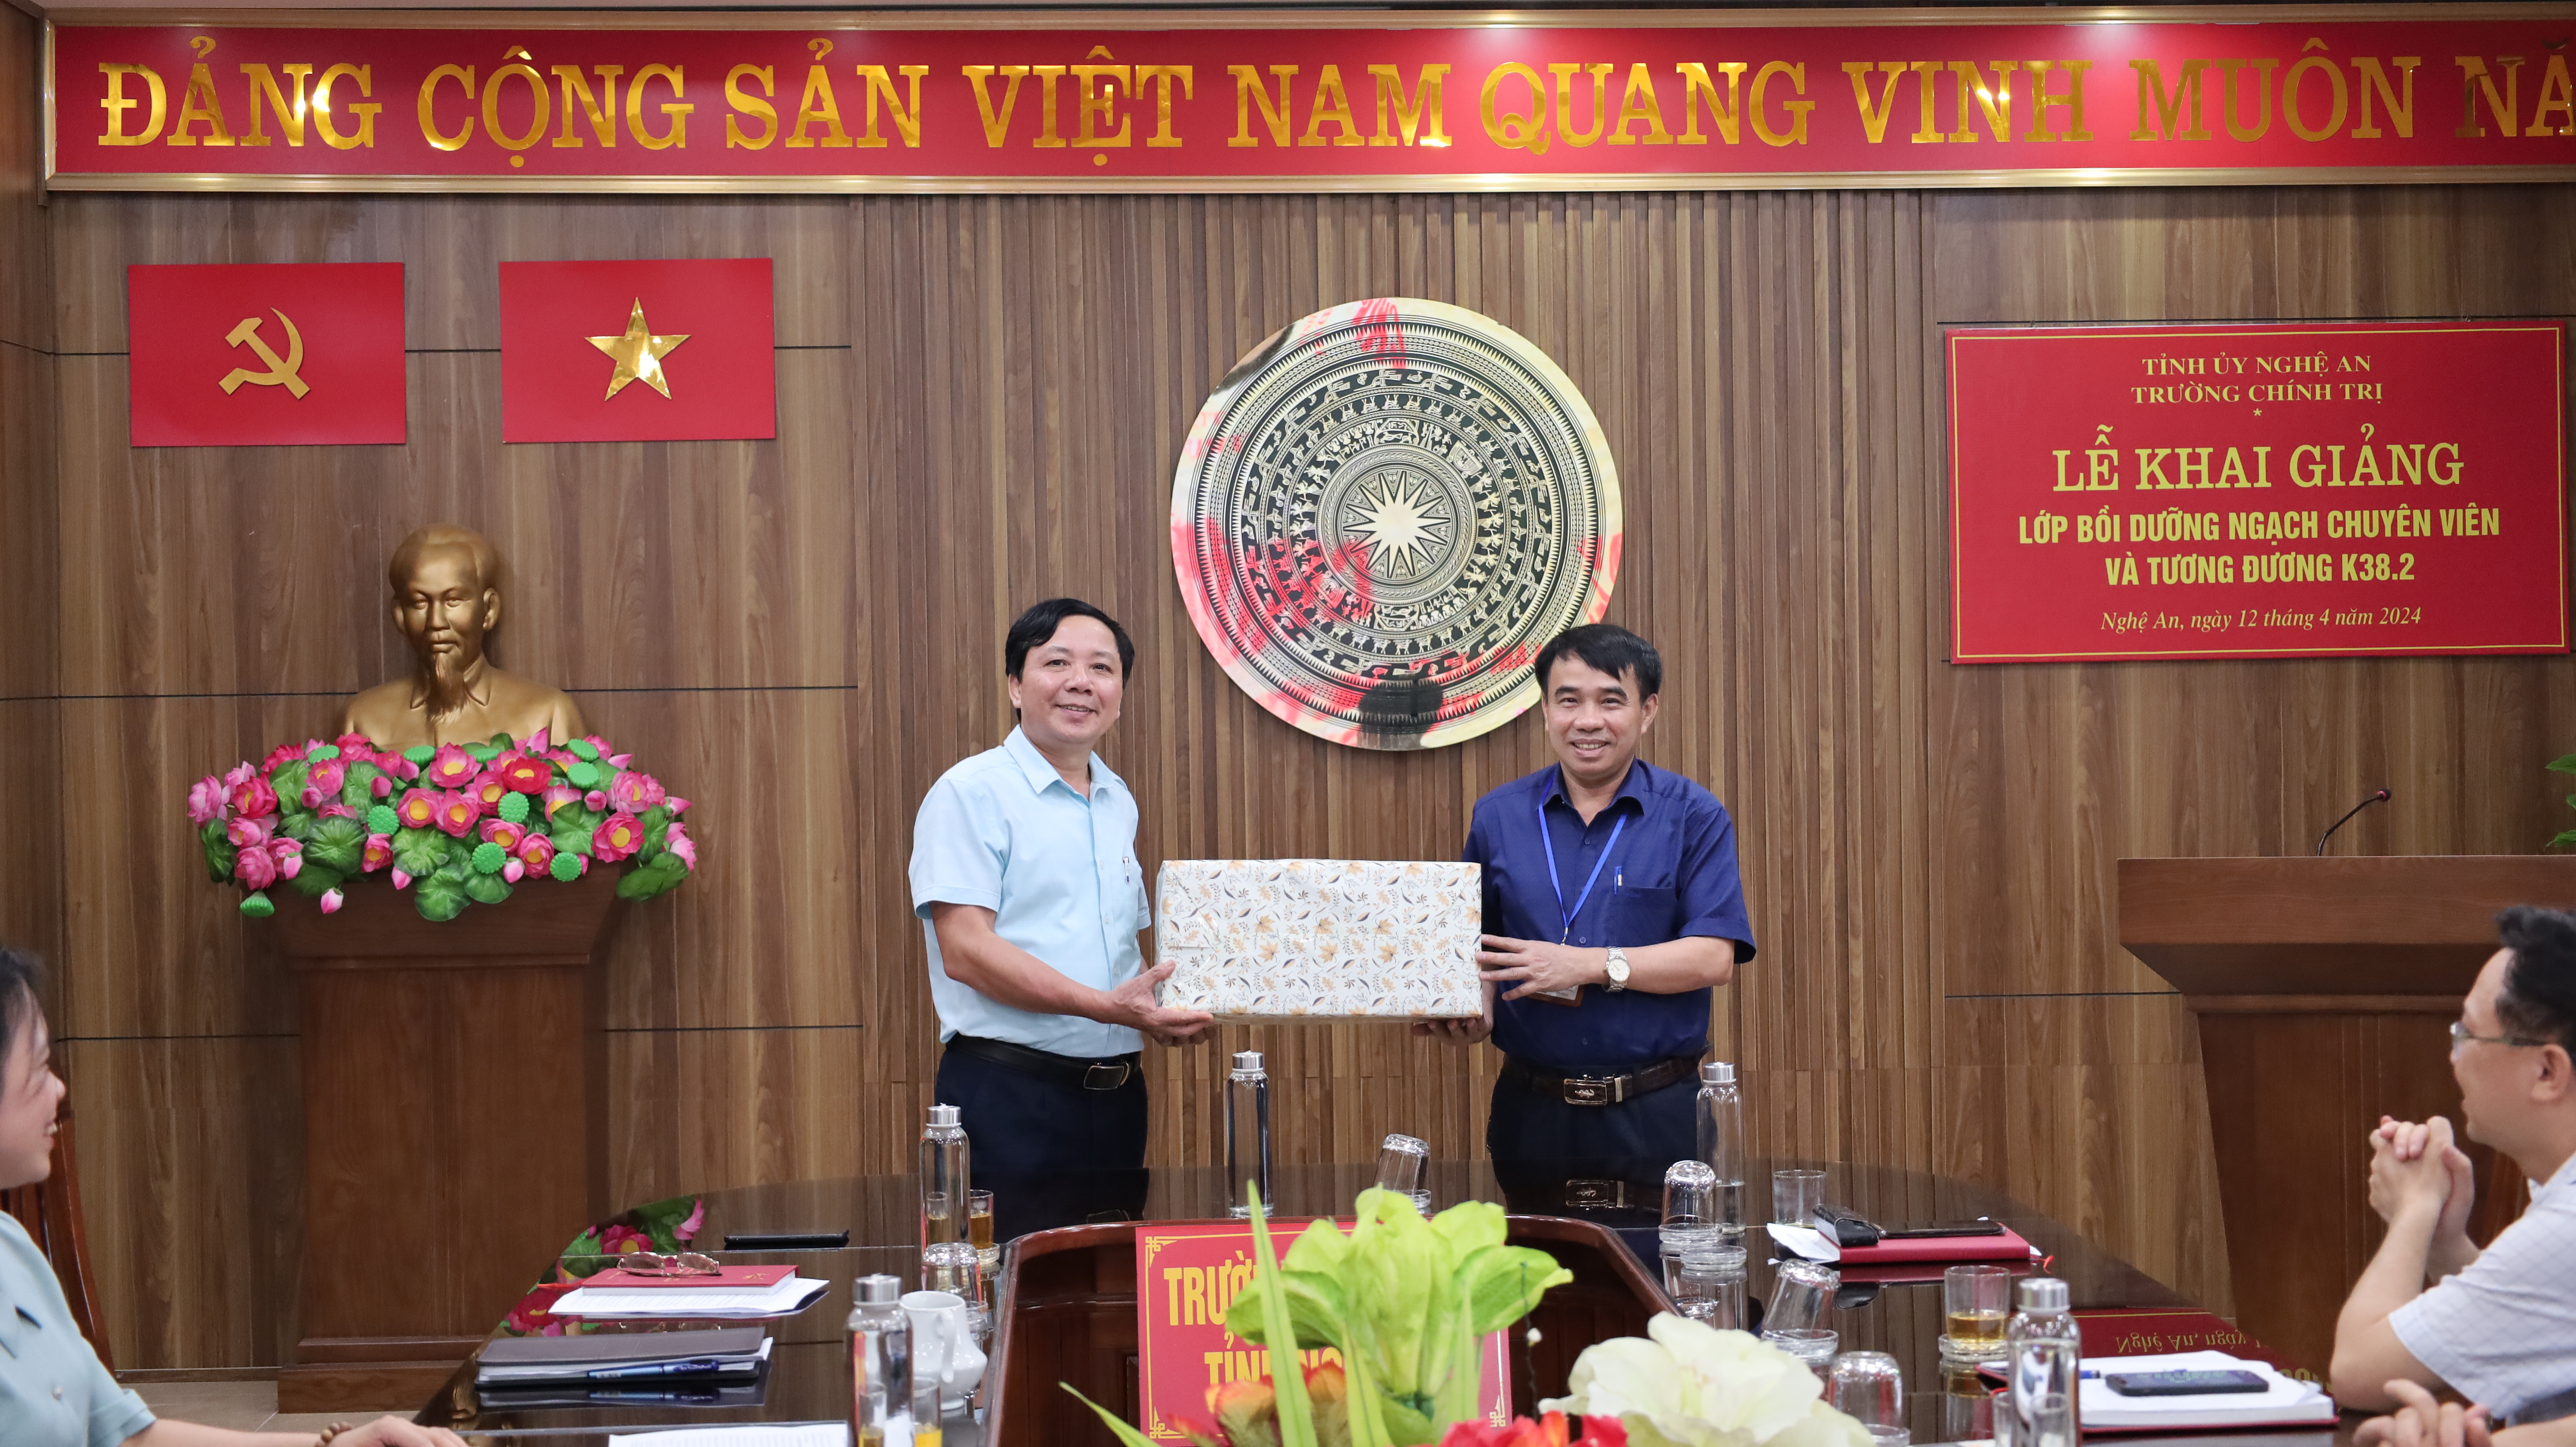 Trường Chính trị tỉnh Phú Thọ nghiên cứu thực tế, trao đổi kinh nghiệm tại Trường Chính trị tỉnh Nghệ An